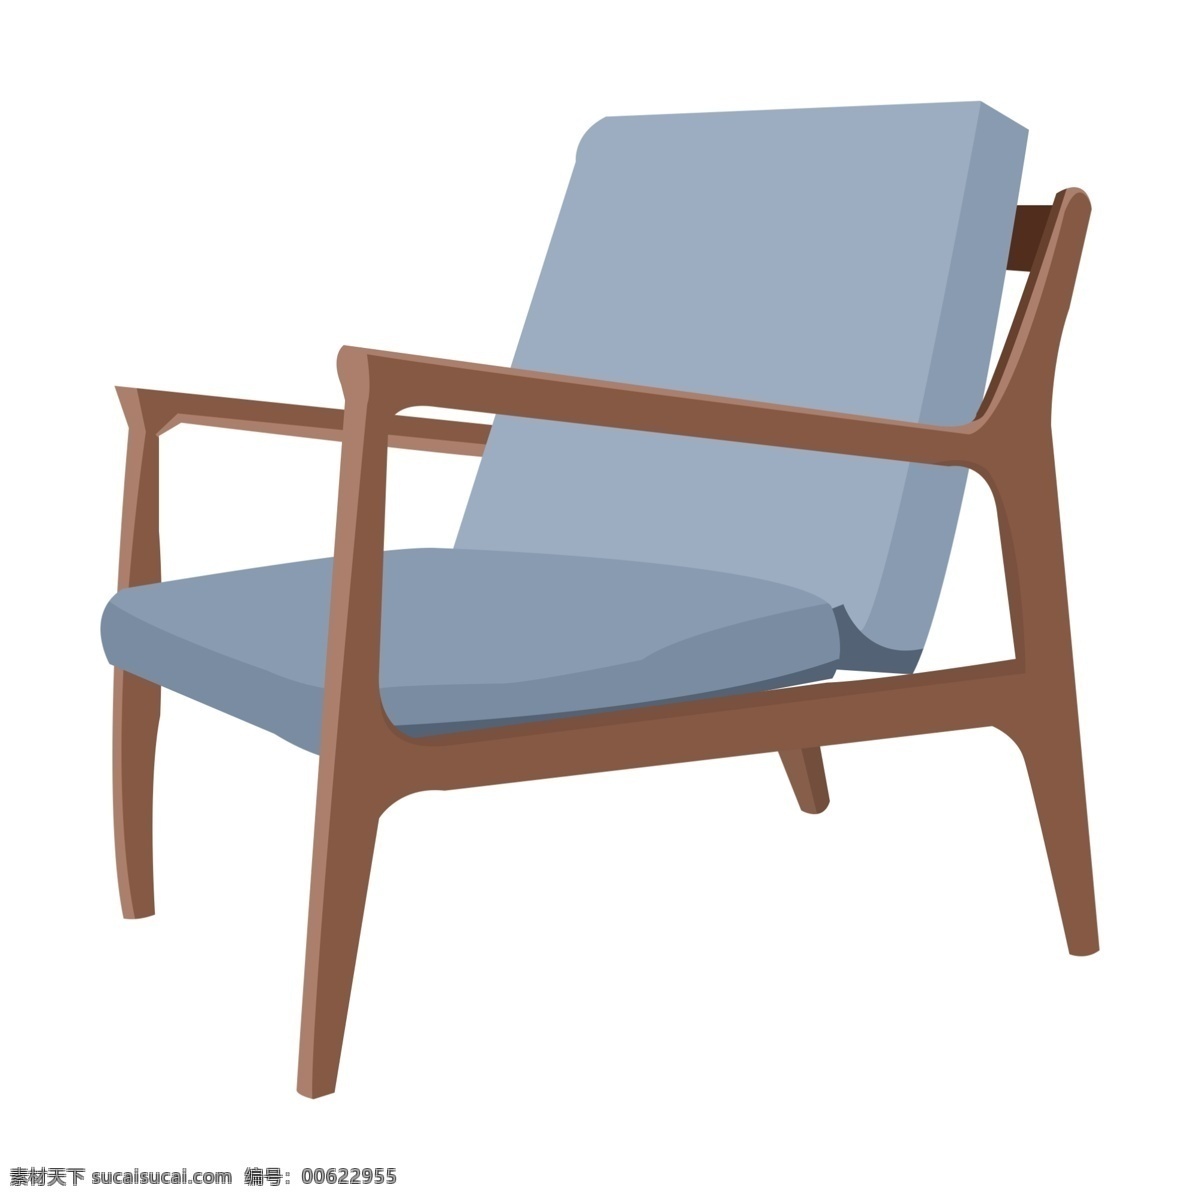 棕色 实木 椅子 插画 中国风 家具 办公椅 现代家居 凳子 棕色椅子插画 蓝色软垫椅子 手绘靠背椅 蓝色垫子